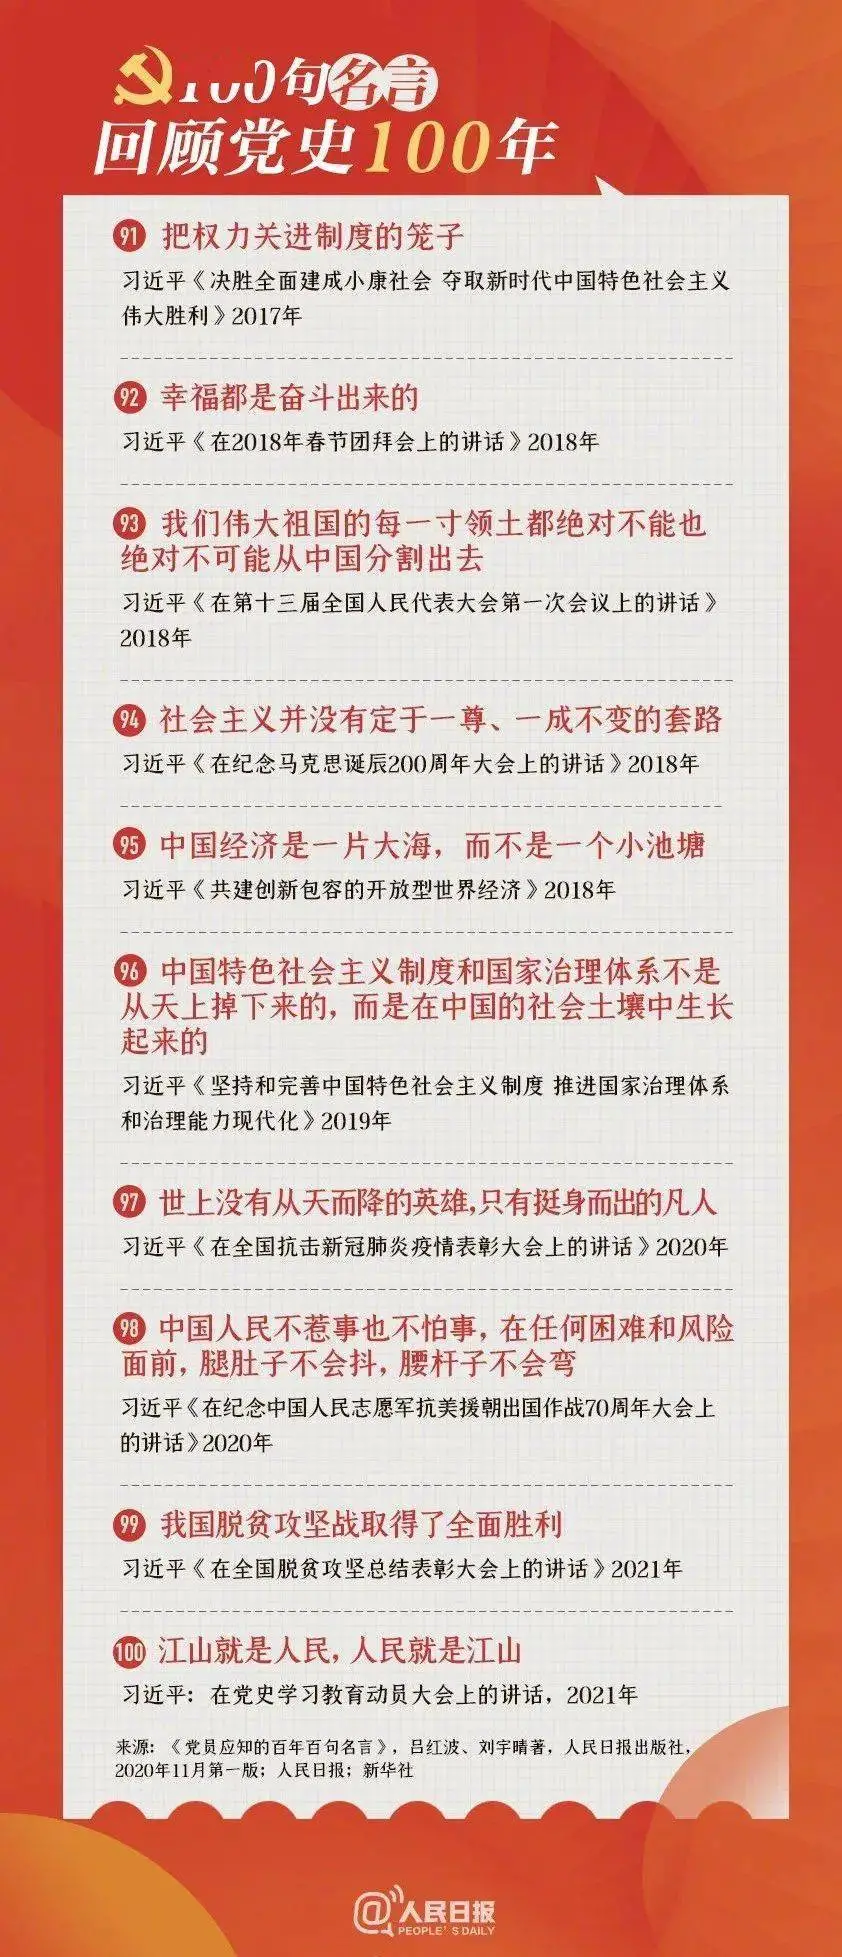 100句名言回顾党史100年 陇南市龙江城乡发展集团 官方网站